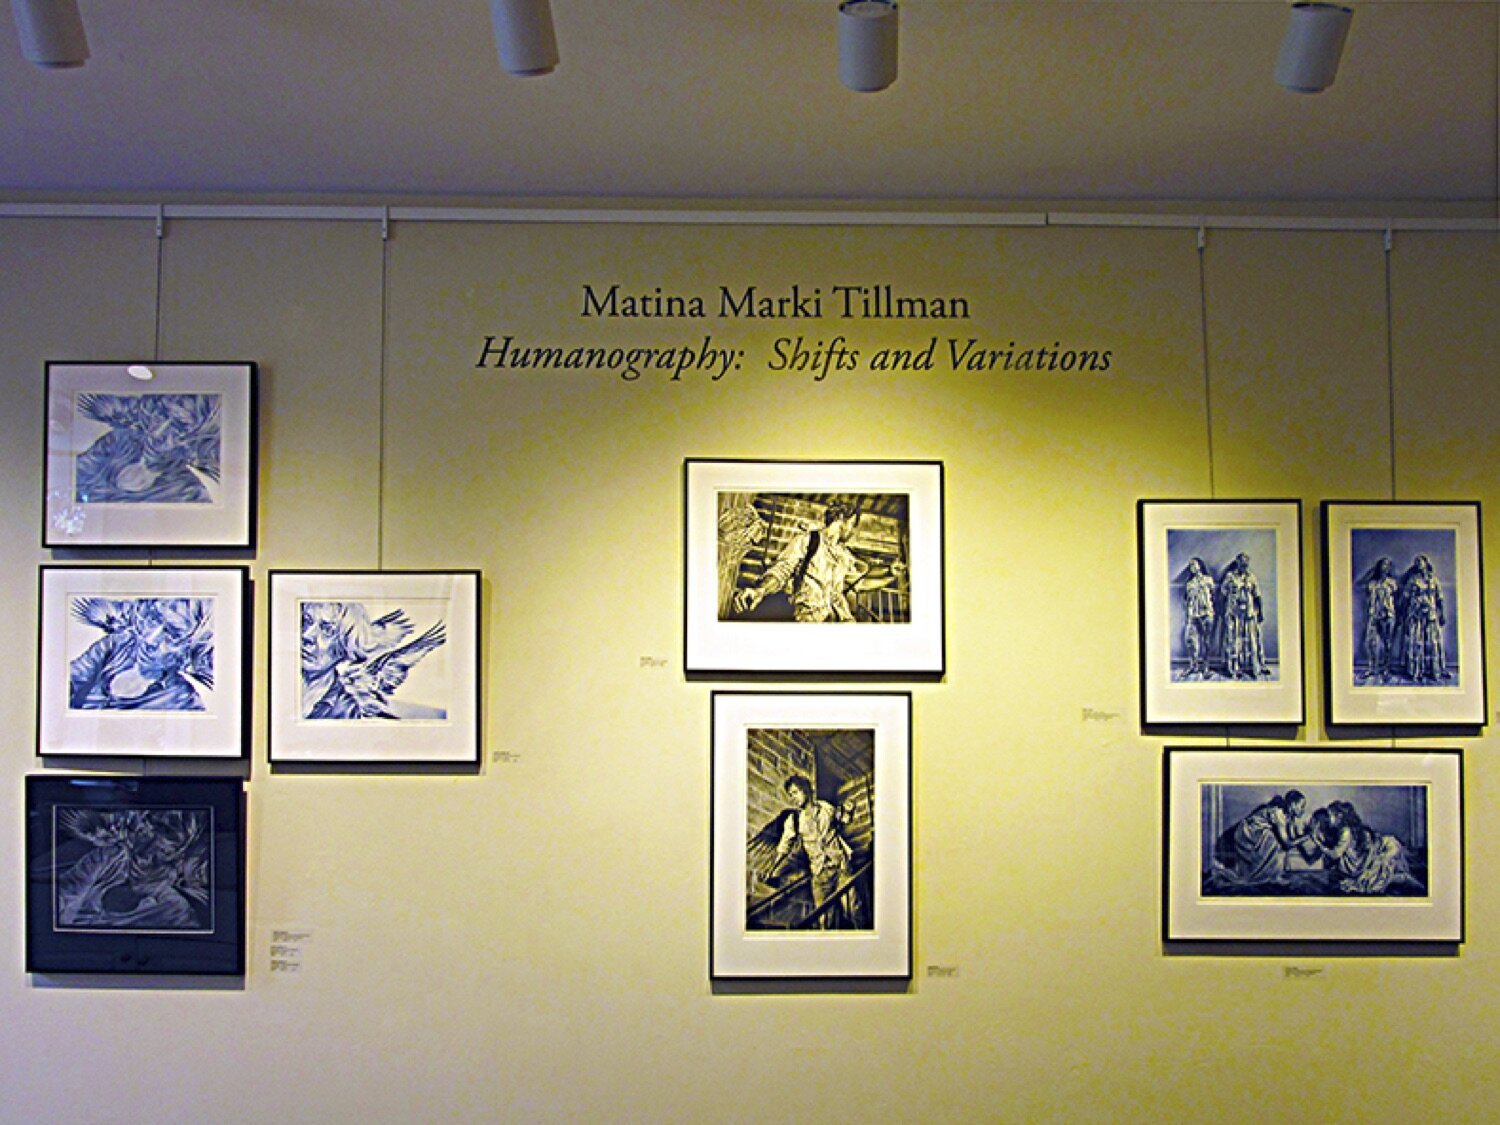 MATINA MARKI TILLMAN, HUMANOGRAPHY: SHIFTS AND VARIATIONS